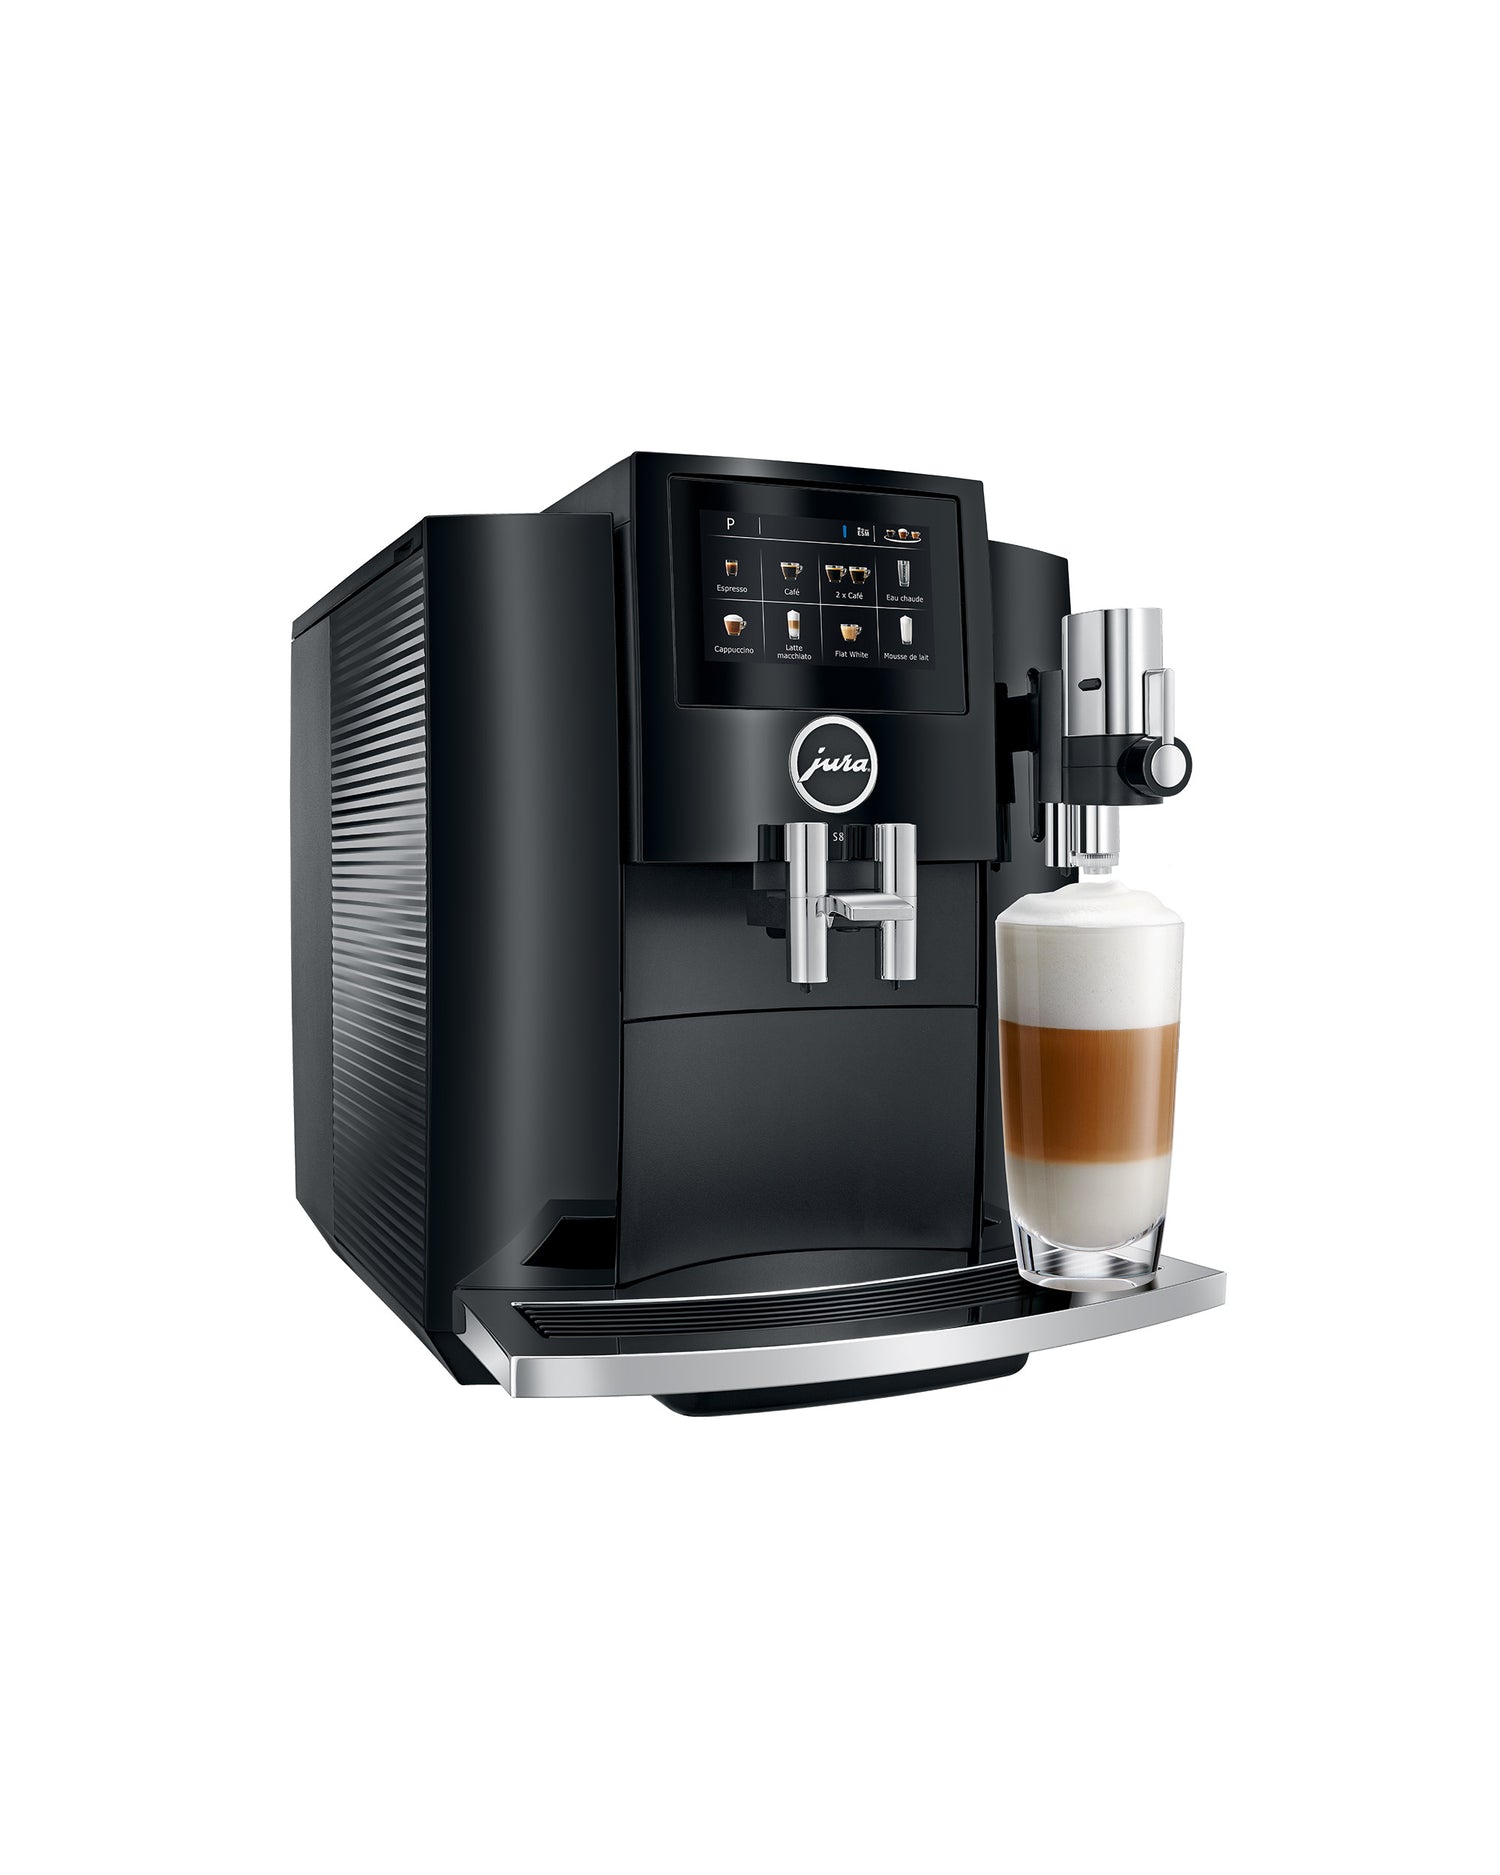 Machine Édika S8 JURA – Importations automatique résidentielle Les espresso